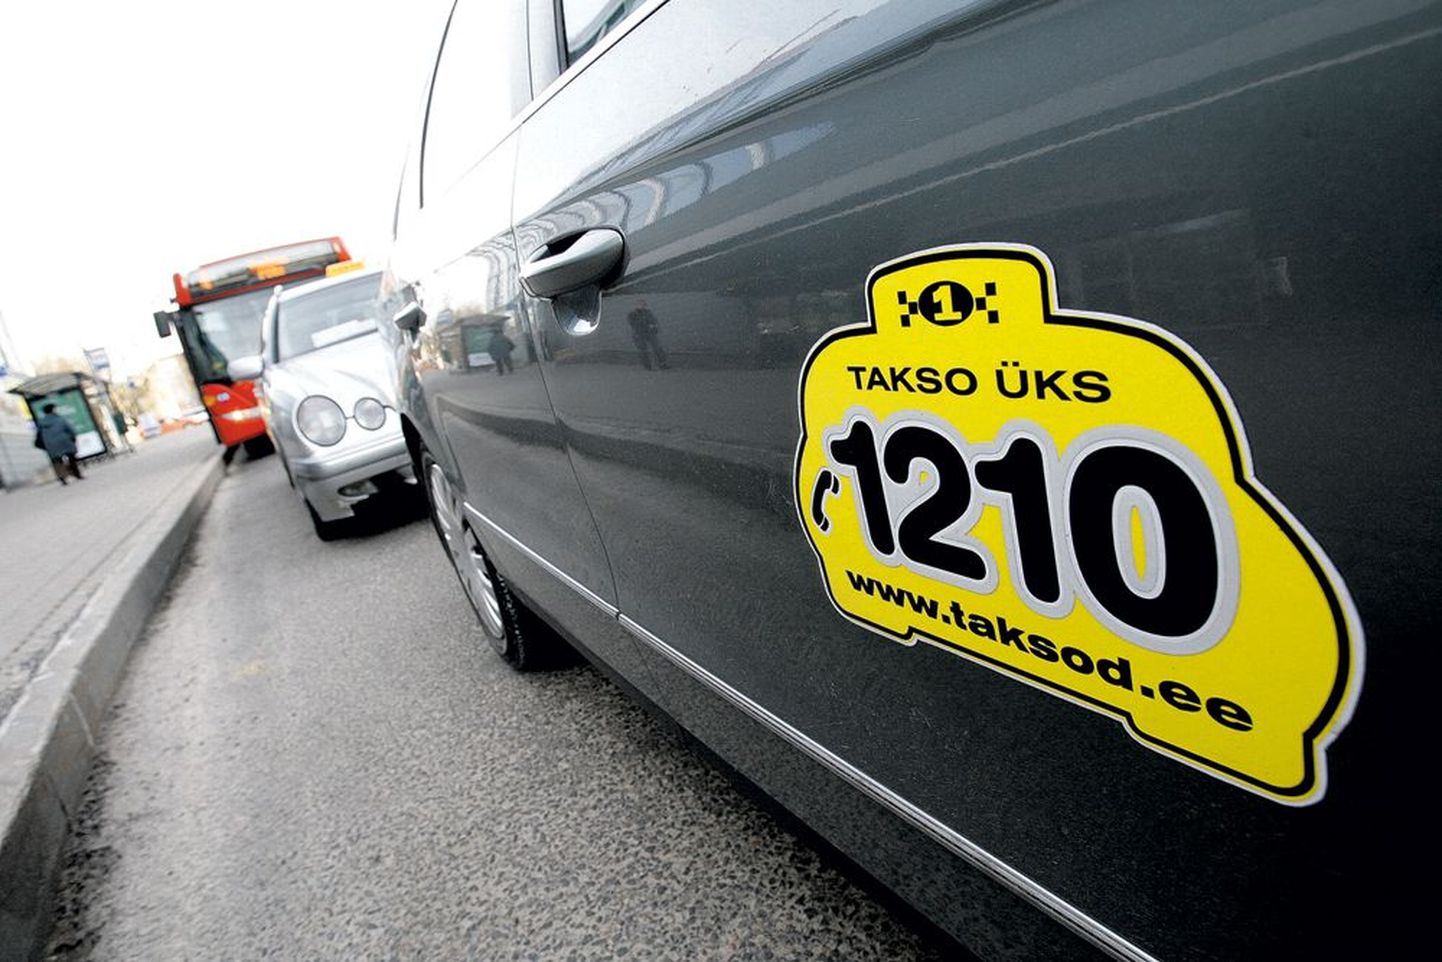 Üle kümne aasta lühinumbrit 1300 kasutanud Takso Üks asendas eelmisel kuul oma taksodel ja koduleheküljel tuntud lühinumbri uue numbriga 1210, kuna ei tahtnud enam reklaamida numbrit, millel oli oht kaduda.